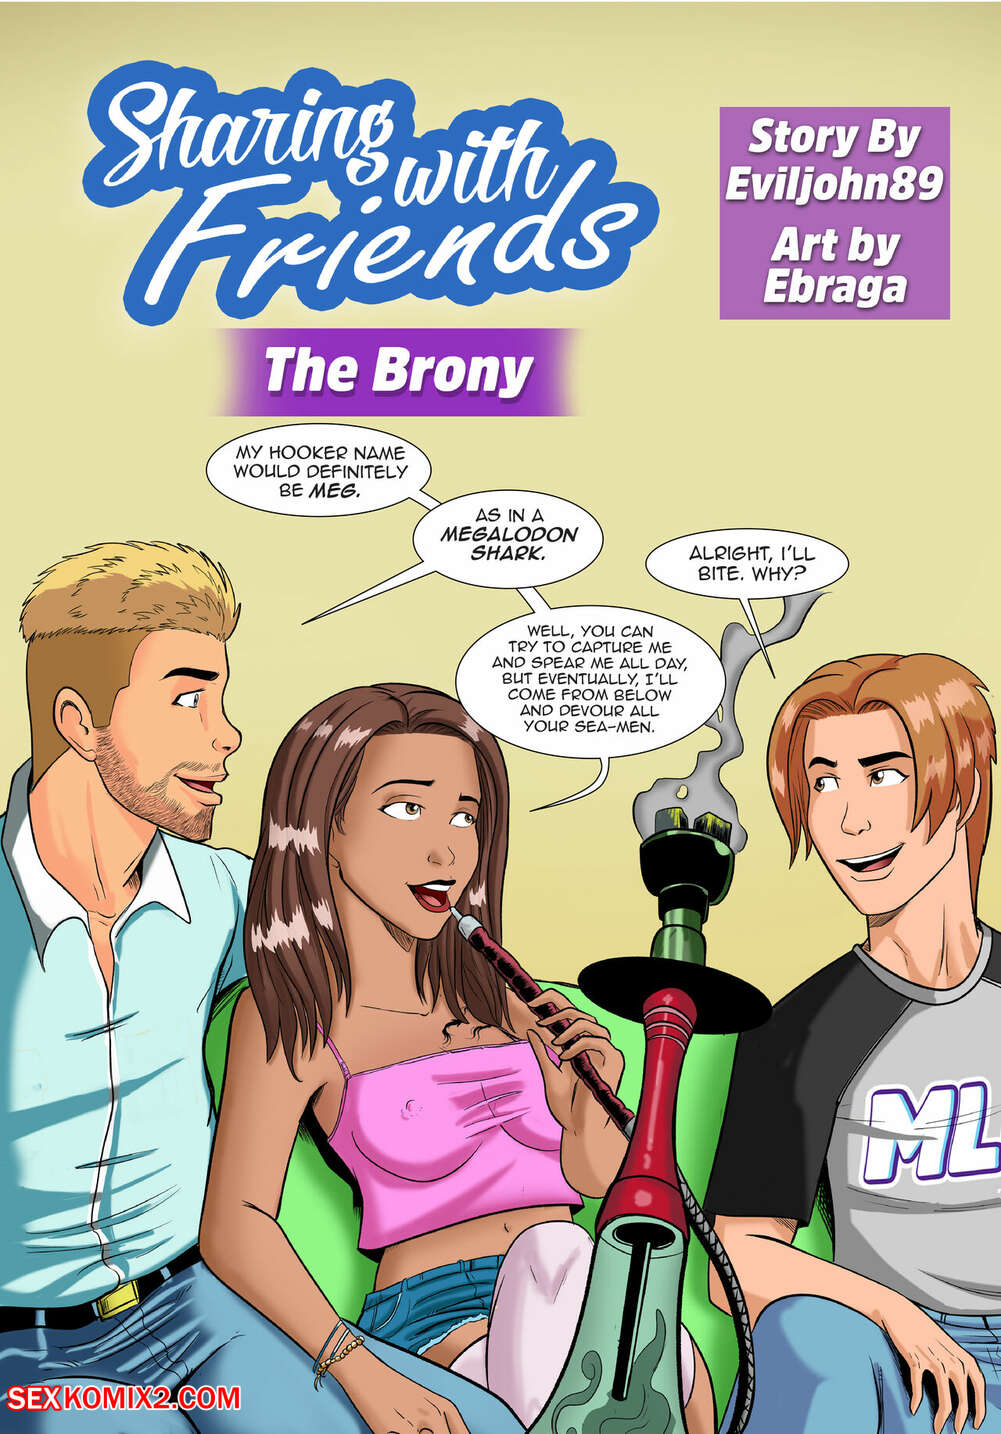 Sex 89 Con - âœ…ï¸ Porn comic Sharing with Friends. The Brony. Eviljohn89, Ebraga. Sex  comic busty brunette is | Porn comics in English for adults only |  sexkomix2.com